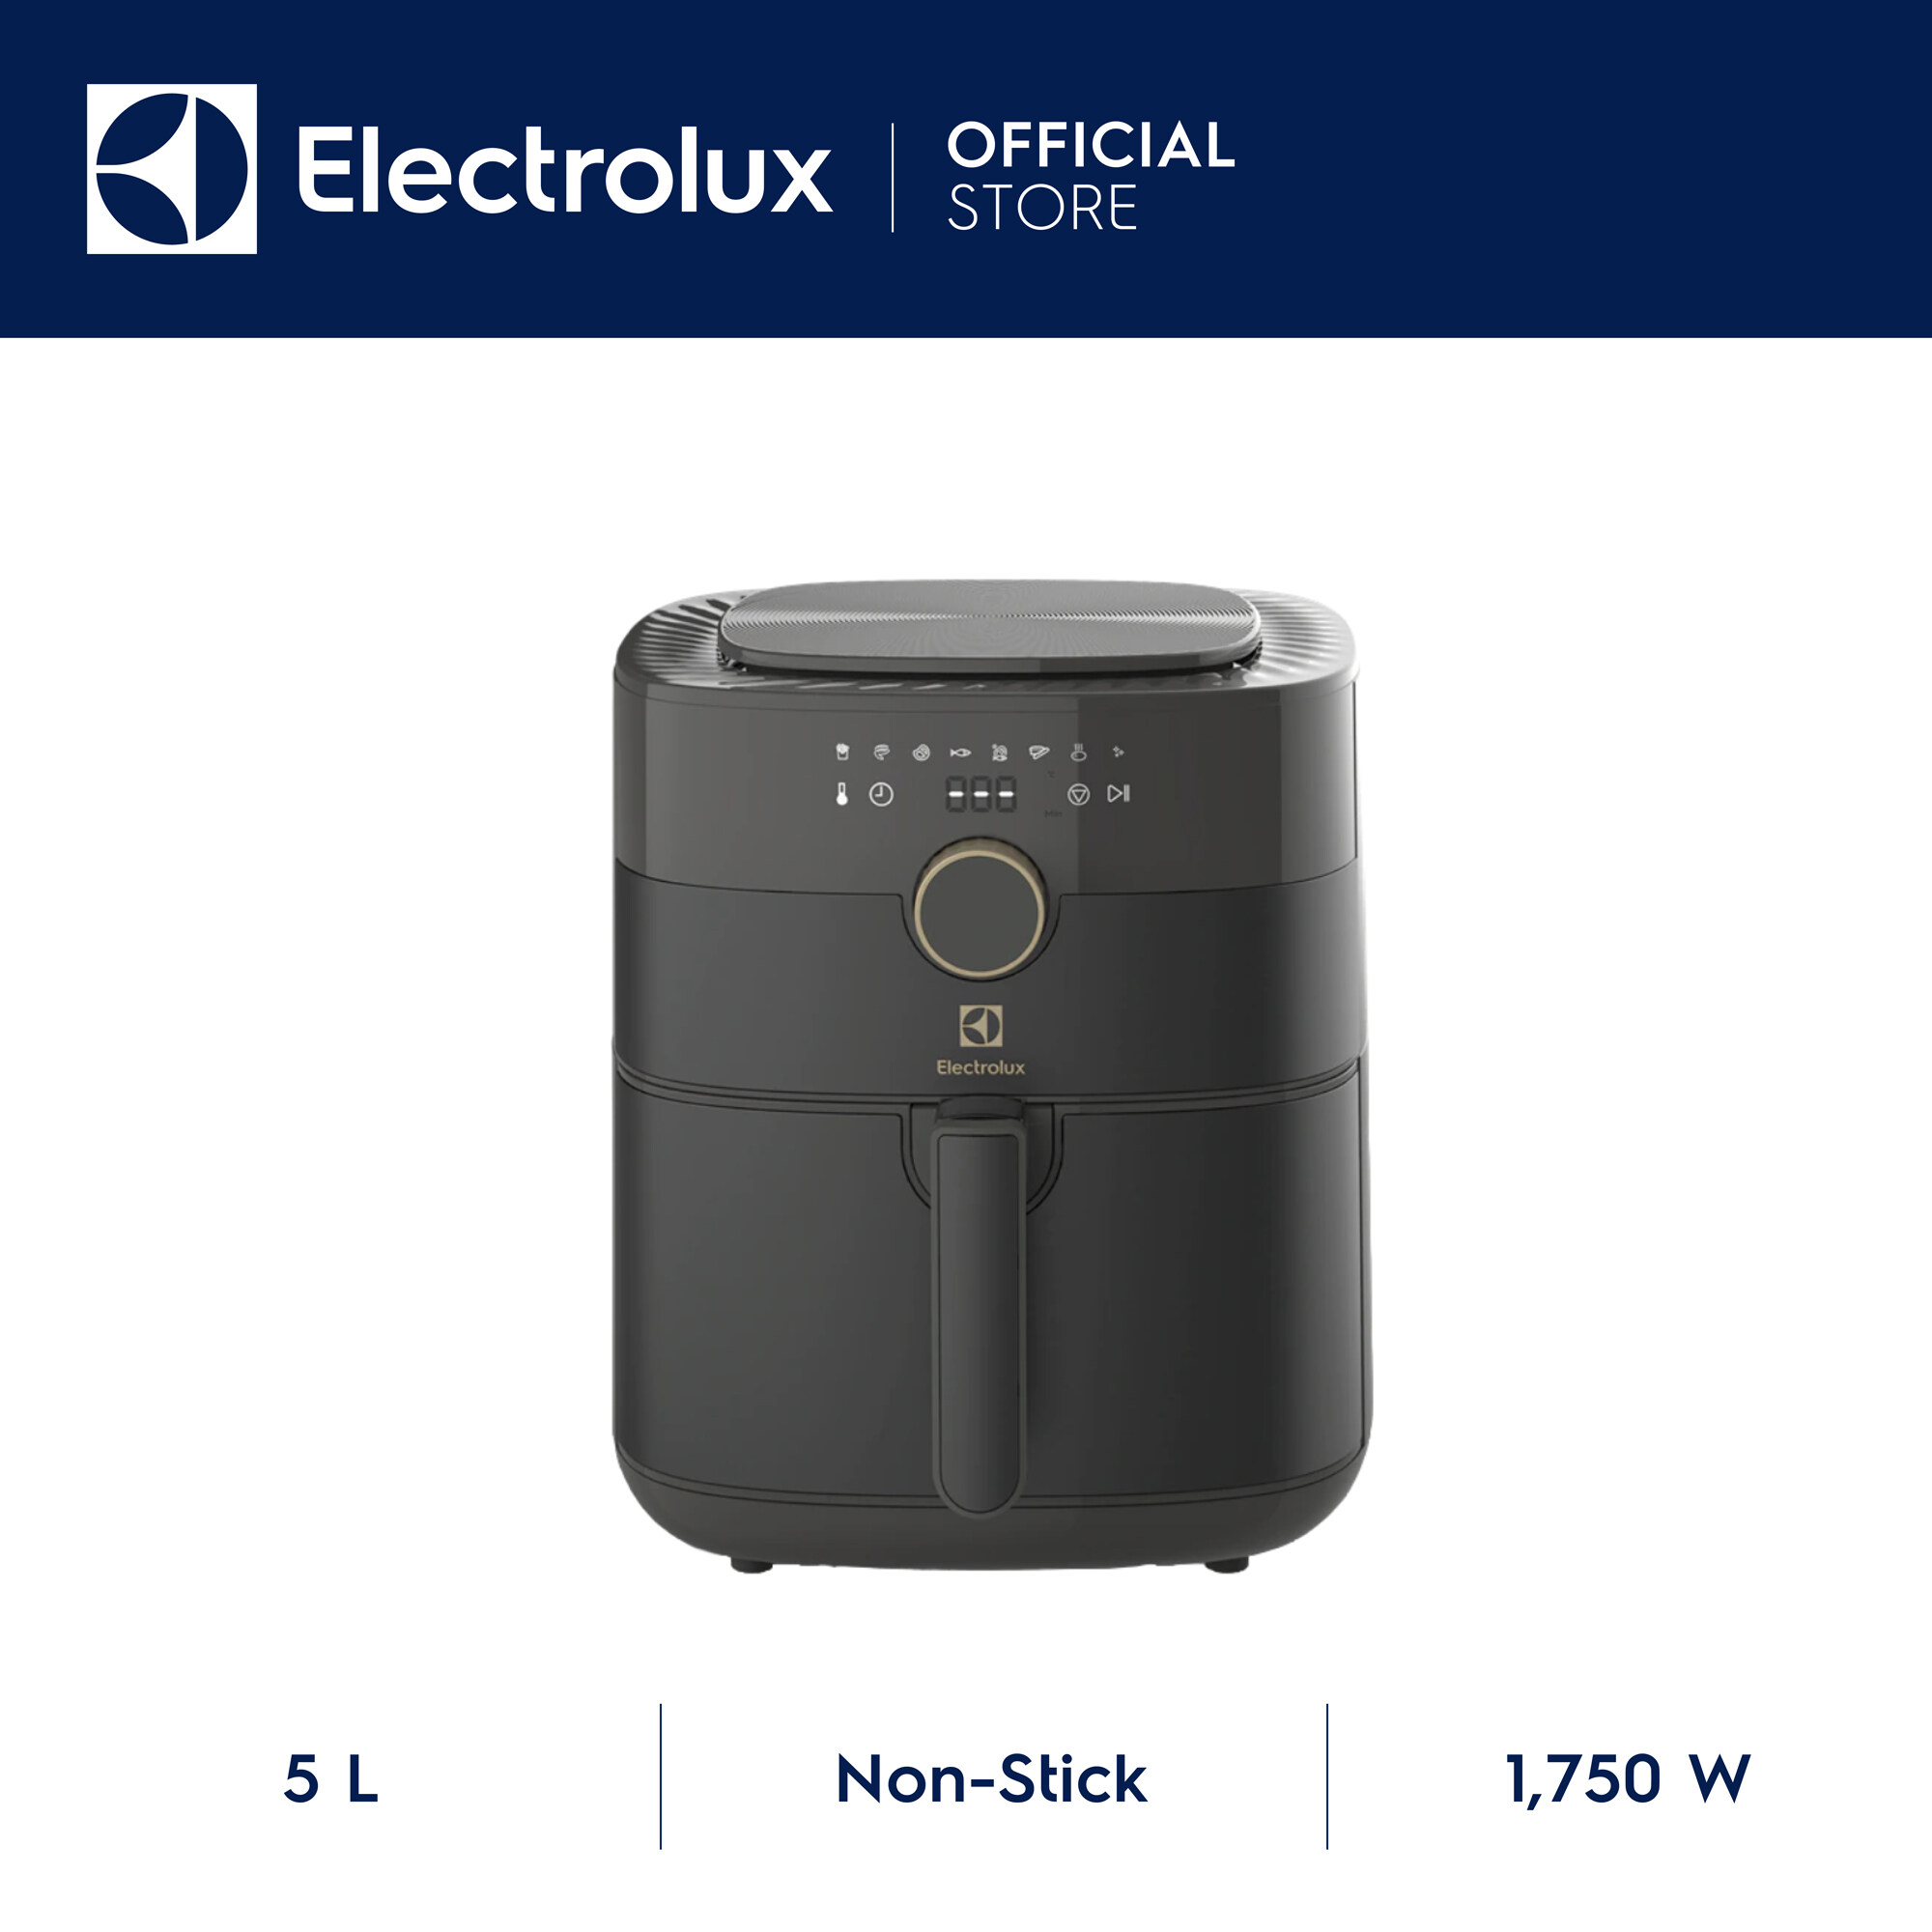 Electrolux หม้อทอดไร้น้ำมันรุ่น E6AF1-520K ความจุ 5 ลิตร (2,000 กรัม) กำลังไฟ 1750 วัตต์